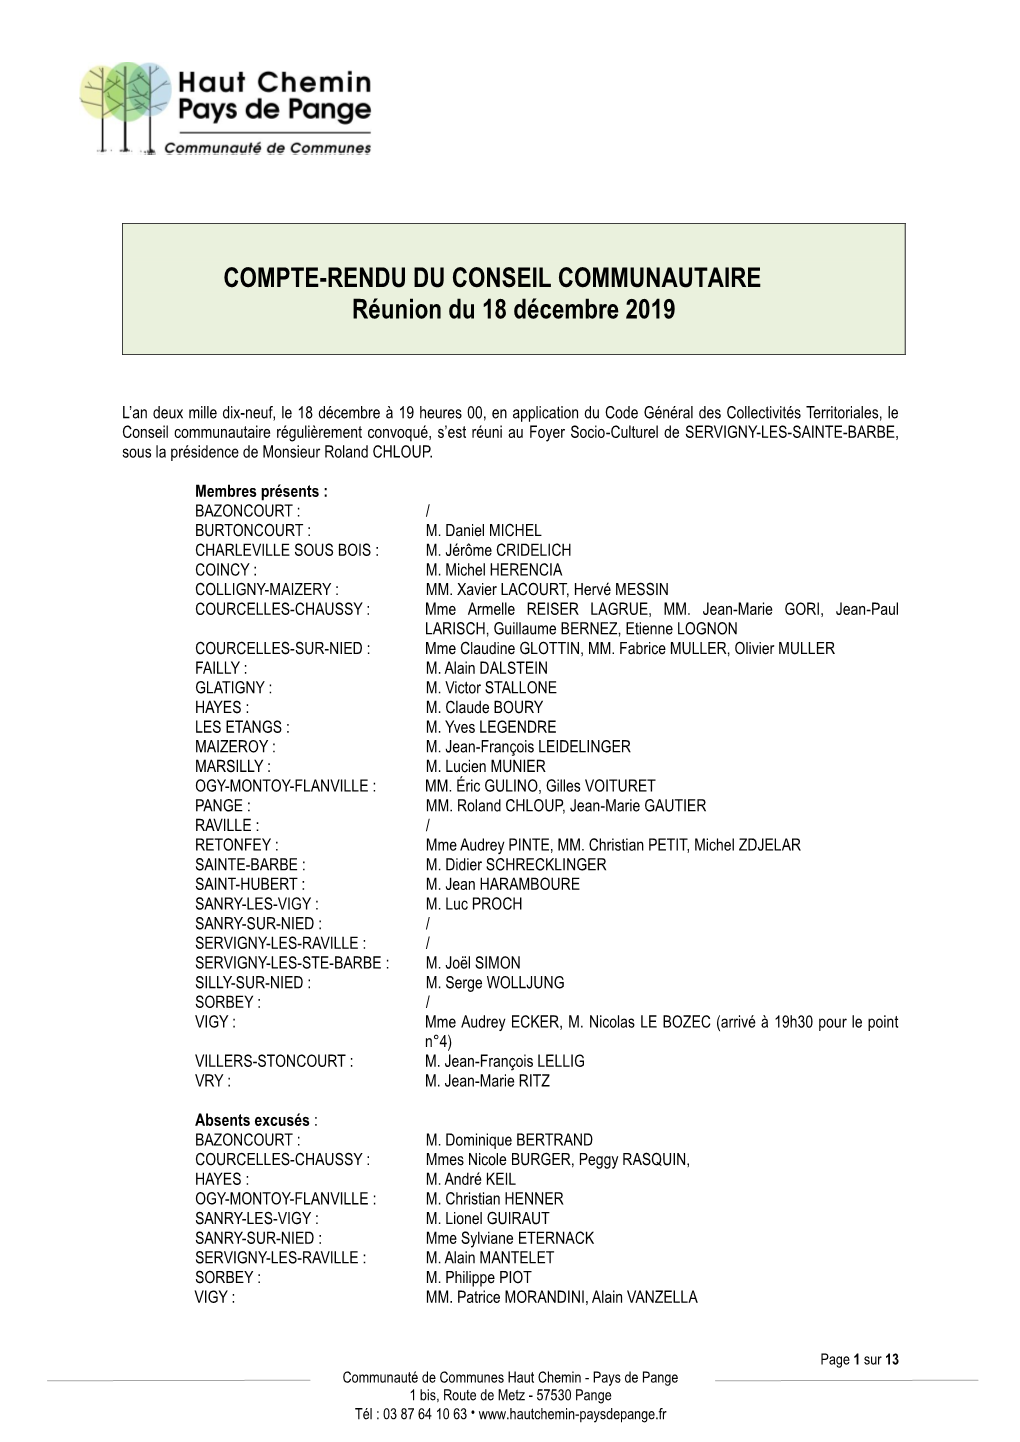 COMPTE-RENDU DU CONSEIL COMMUNAUTAIRE Réunion Du 18 Décembre 2019